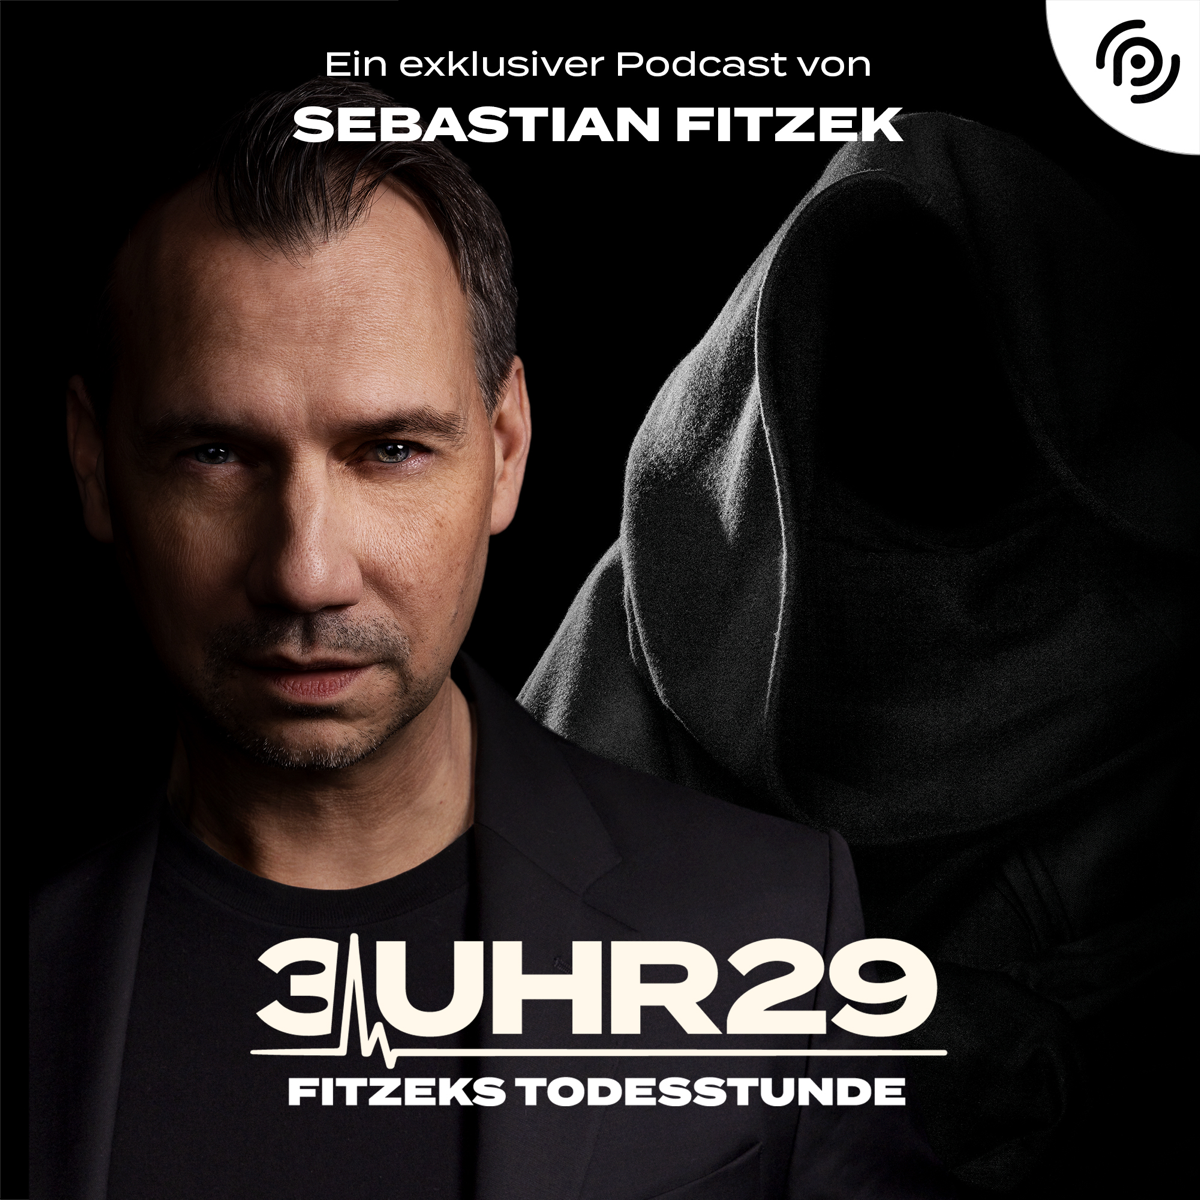 Sebastian Fitzek feiert Podcast-Debüt bei Podimo